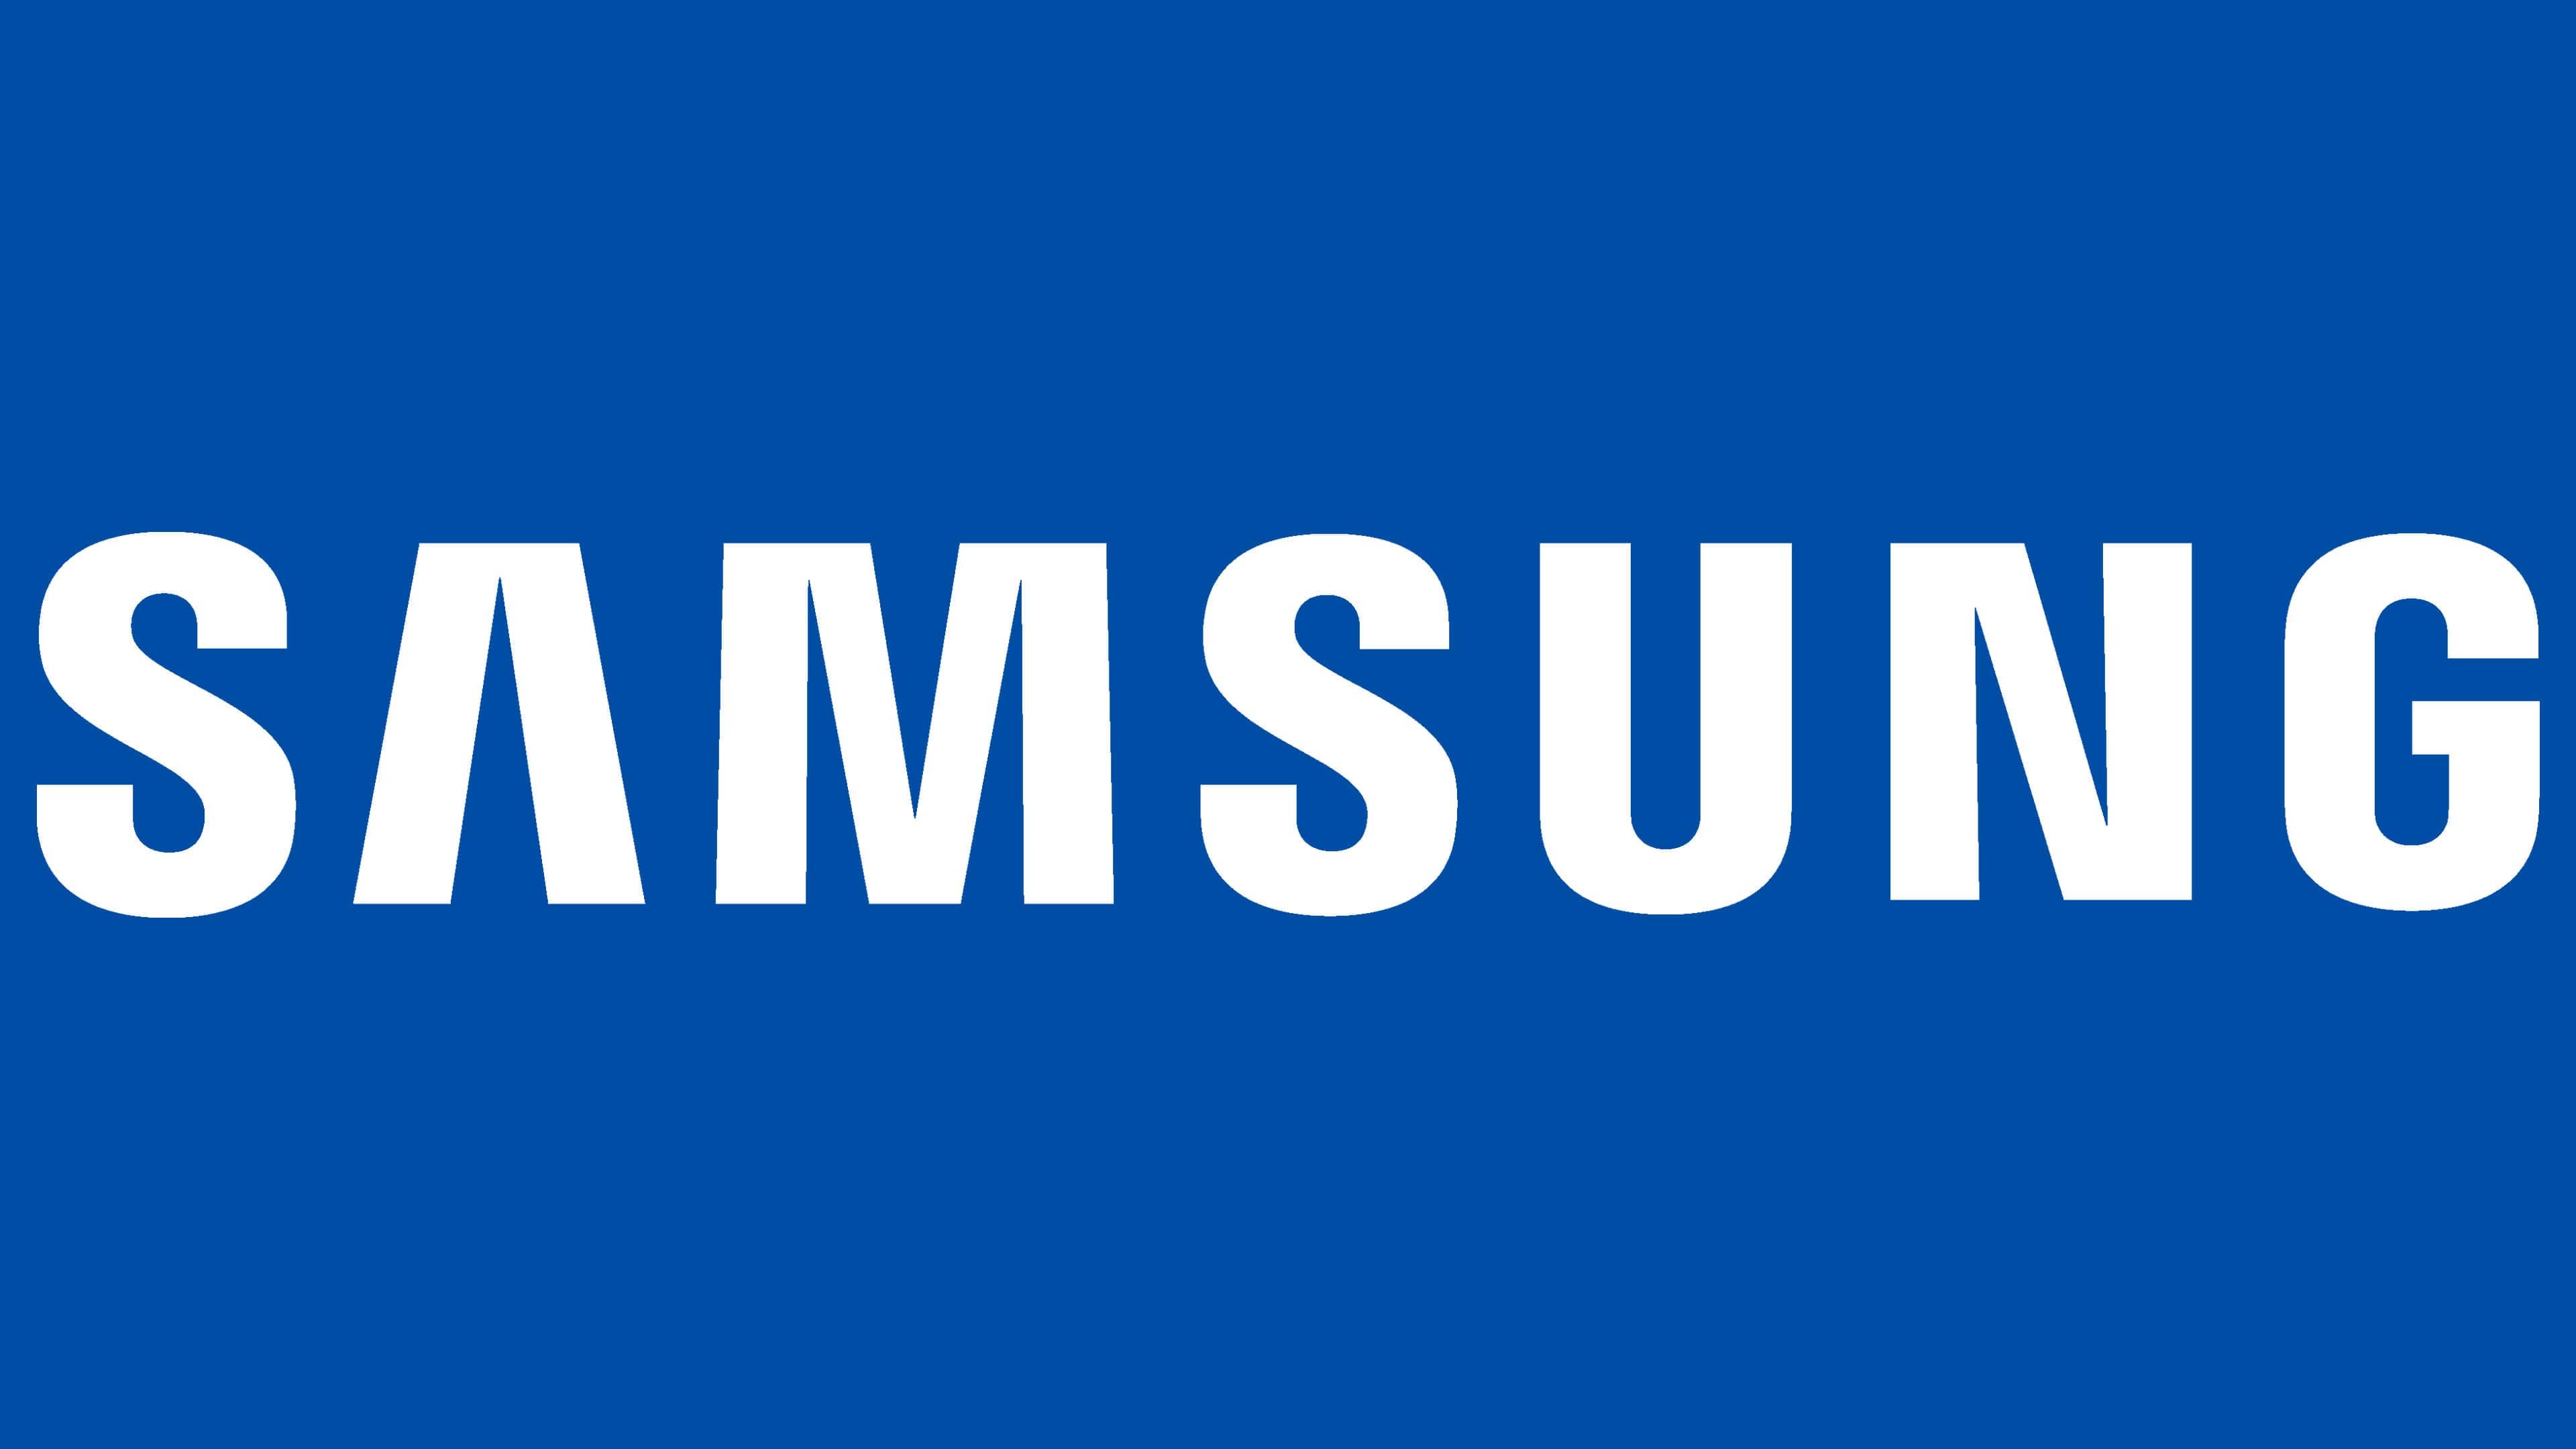 Samsung Logo Meaning: Bạn có biết ý nghĩa của biểu tượng Samsung không? Hãy khám phá những bí mật đằng sau thiết kế đặc trưng của Samsung và tìm hiểu tại sao nó lại trở thành một trong những biểu tượng công nghệ hàng đầu thế giới.